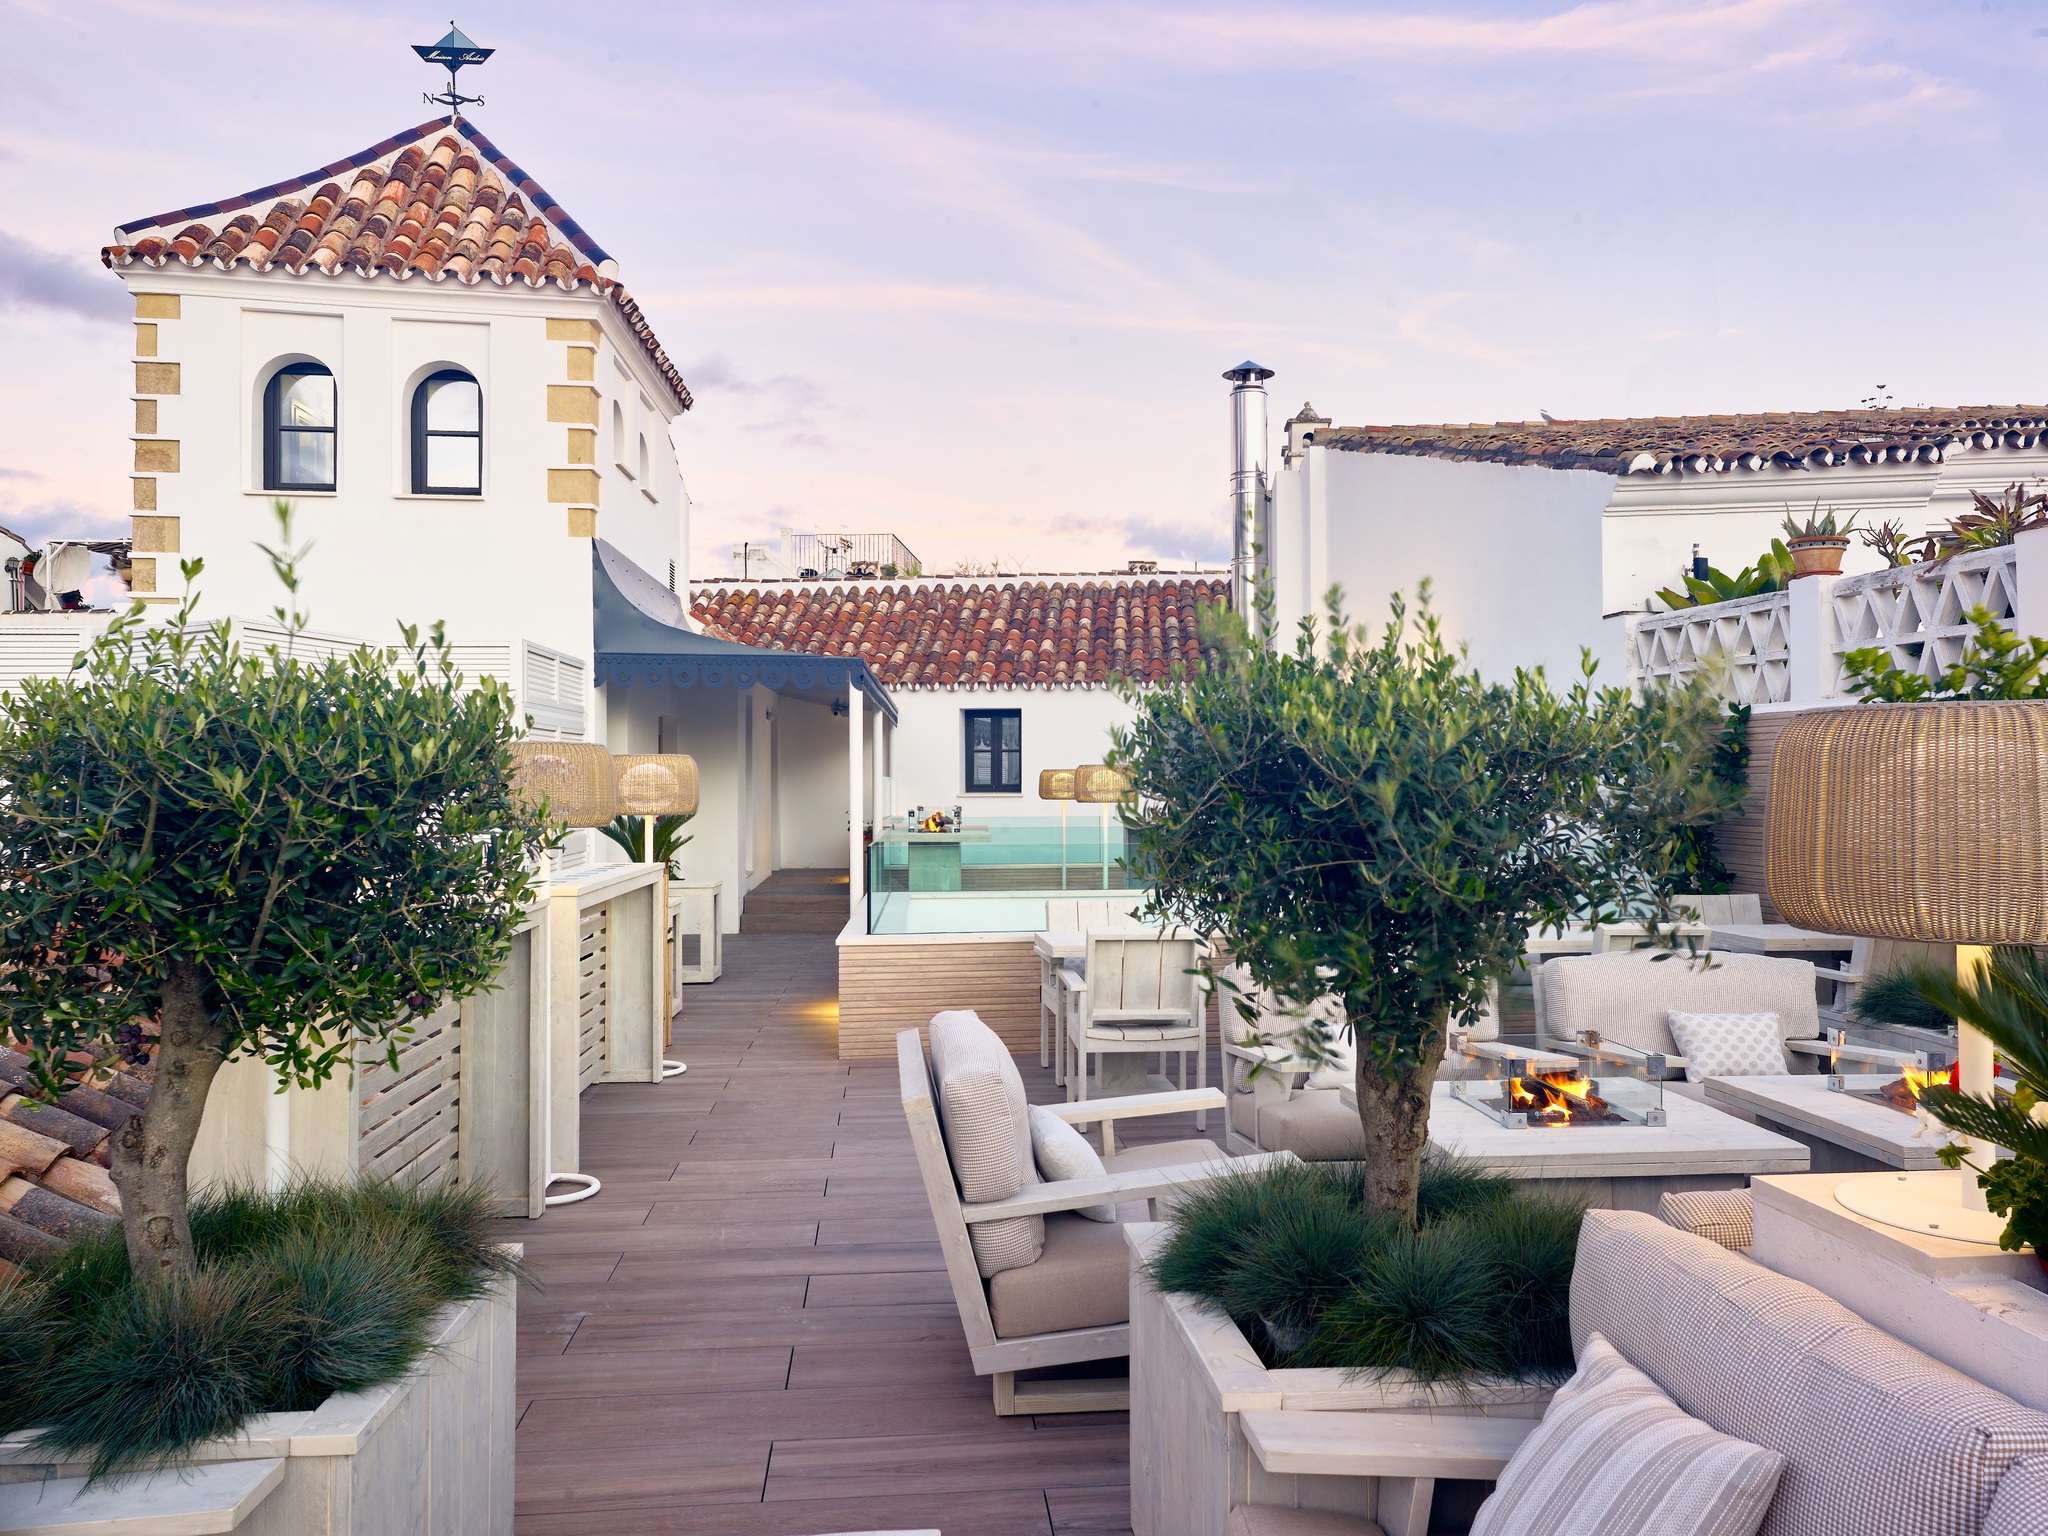 Terraza del hotel Maison Ardois, en el casco histórico de Marbella.